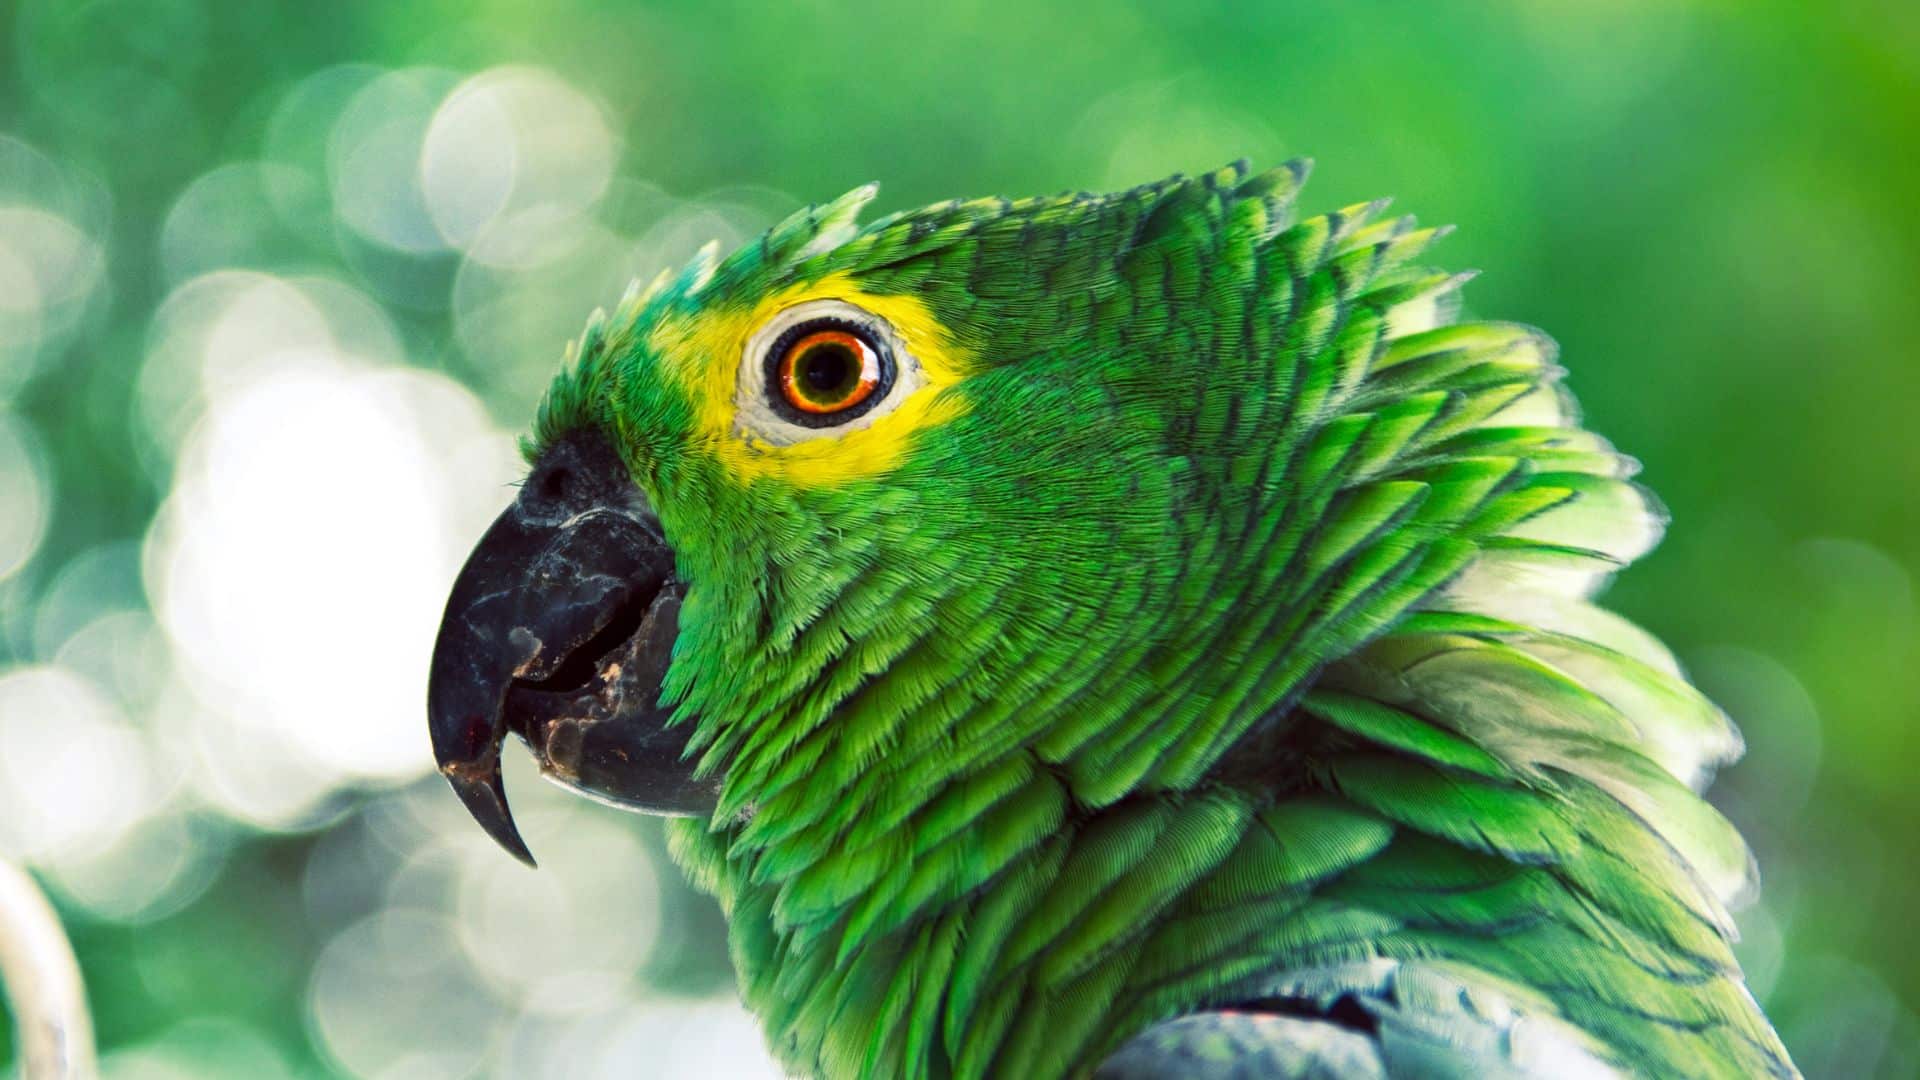 A capacidade de imitar a voz humana pode ser útil para os papagaios de várias maneiras. Por exemplo, eles podem usar a sua capacidade de imitar a voz humana para chamar a atenção dos humanos, ou para se comunicar com outros papagaios